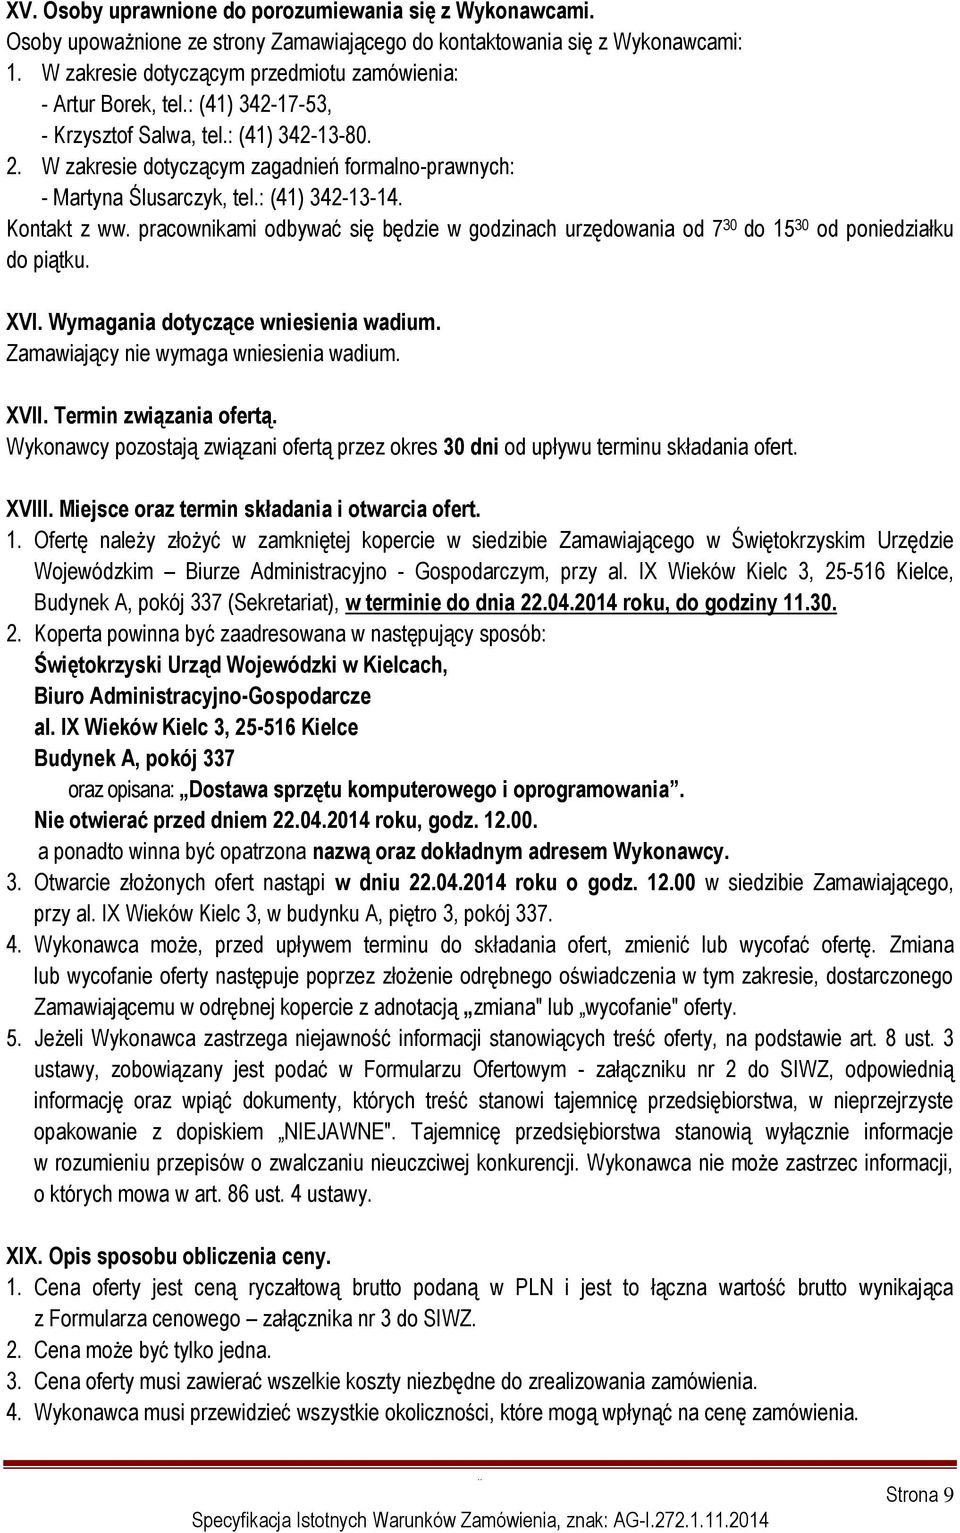 W zakresie dotyczącym zagadnień formalno-prawnych: - Martyna Ślusarczyk, tel.: (41) 342-13-14. Kontakt z ww.